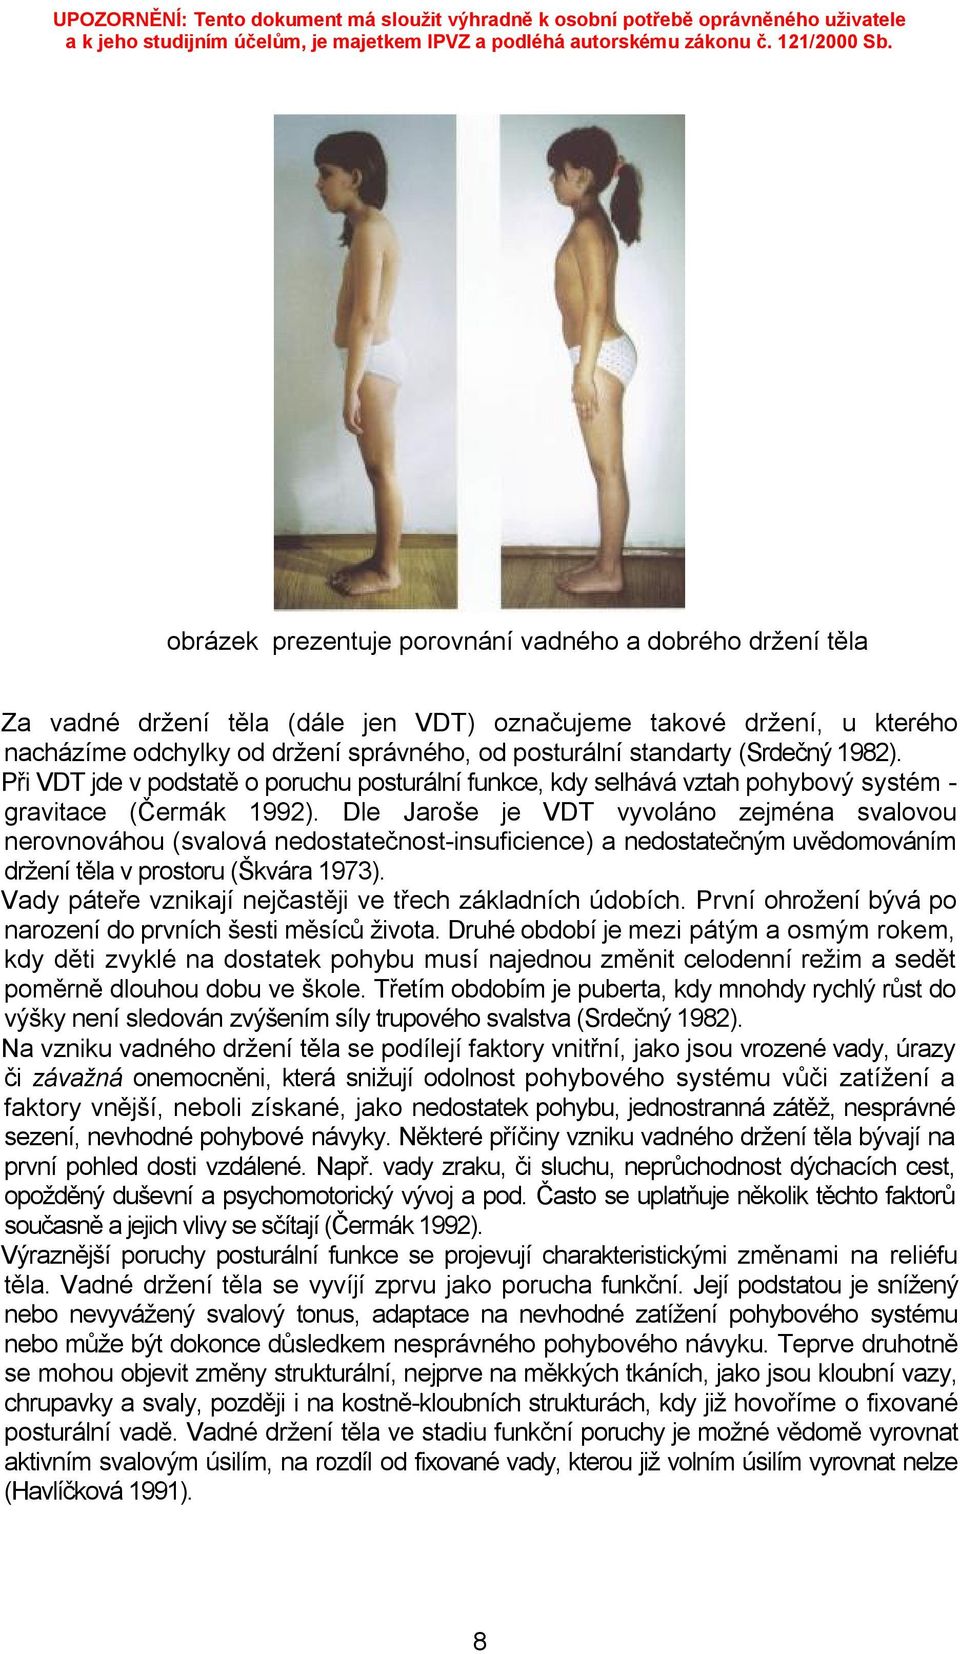 Dle Jaroše je VDT vyvoláno zejména svalovou nerovnováhou (svalová nedostatečnost-insuficience) a nedostatečným uvědomováním držení těla v prostoru (Škvára 1973).